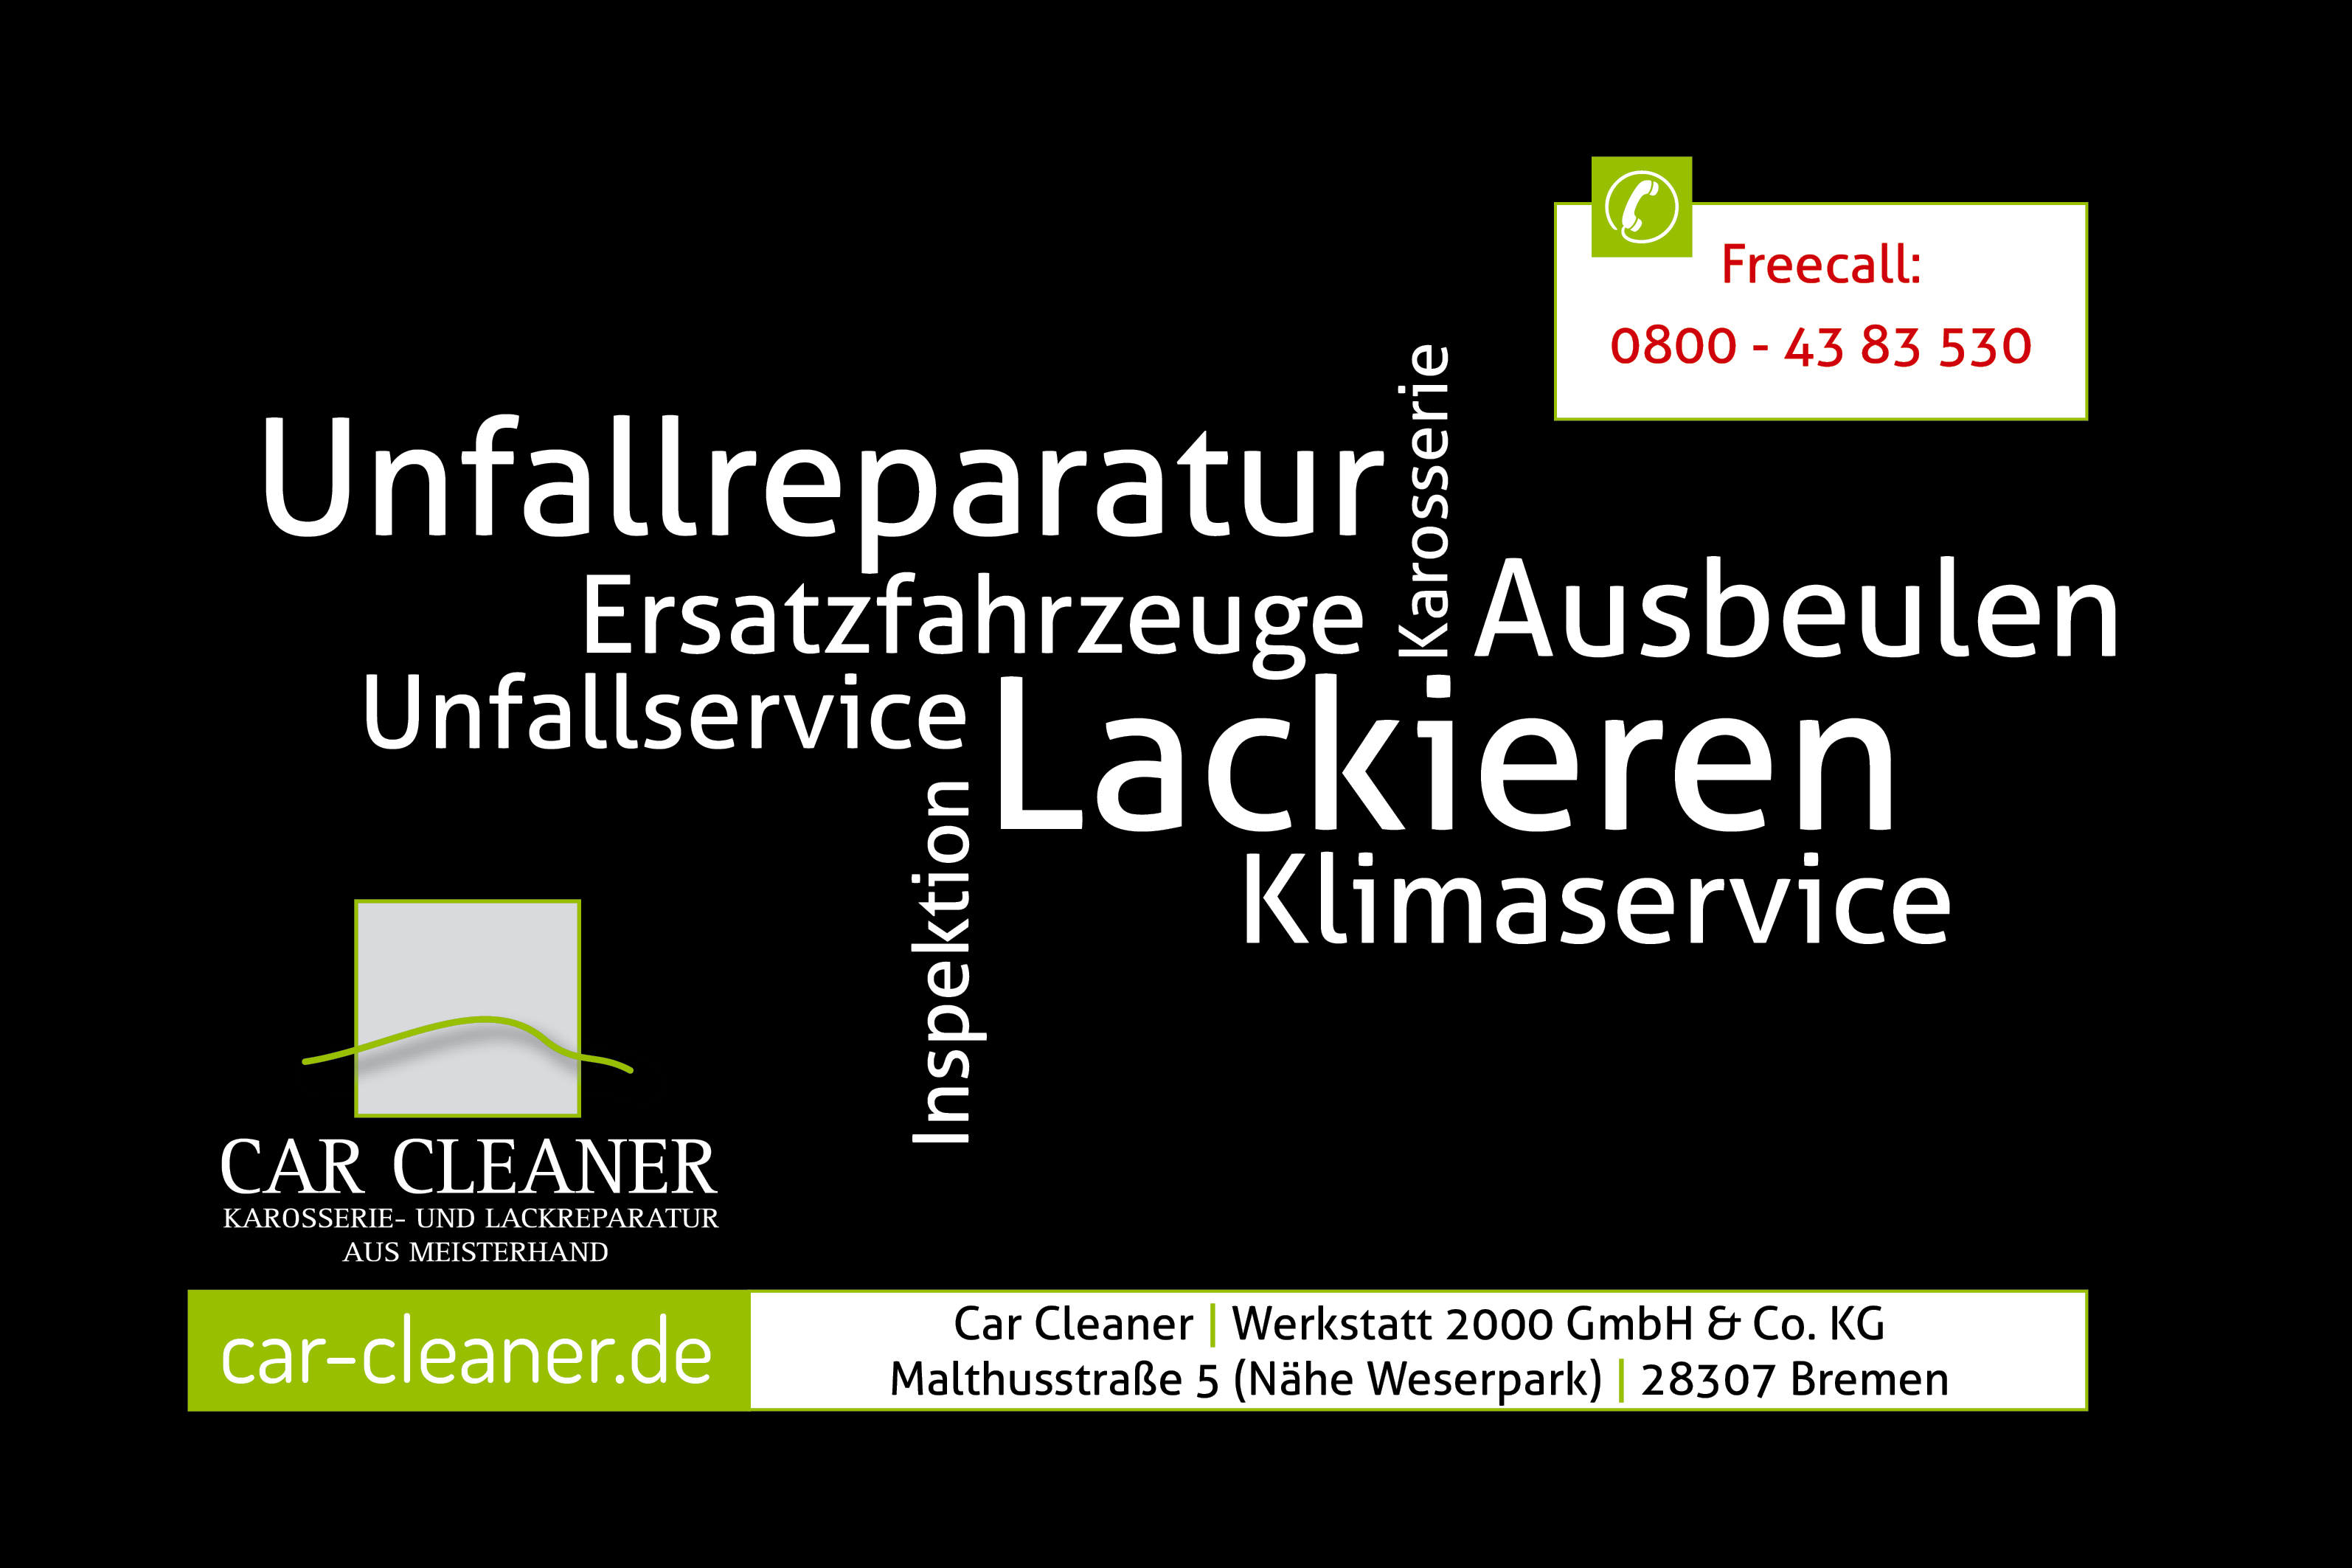 Bild 1 Car Cleaner Werkstatt 2000 GmbH&Co. KG Karosserie-u.Lackierfachbetrieb in Bremen